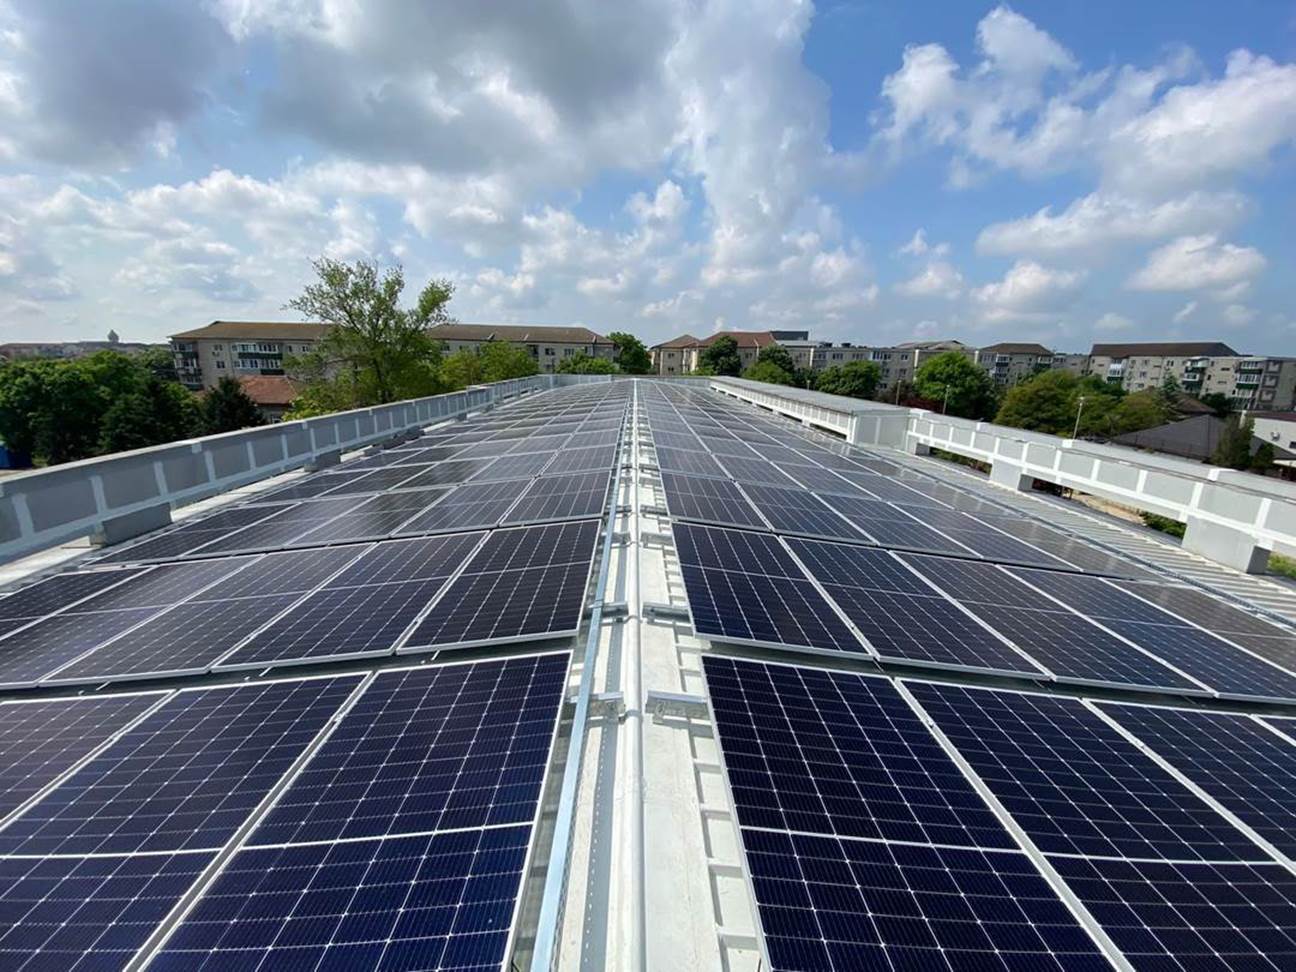 Orange România a instalat peste 200 de noi panouri solare pe acoperişul centrului de interconectare comunicaţii din Timişoara